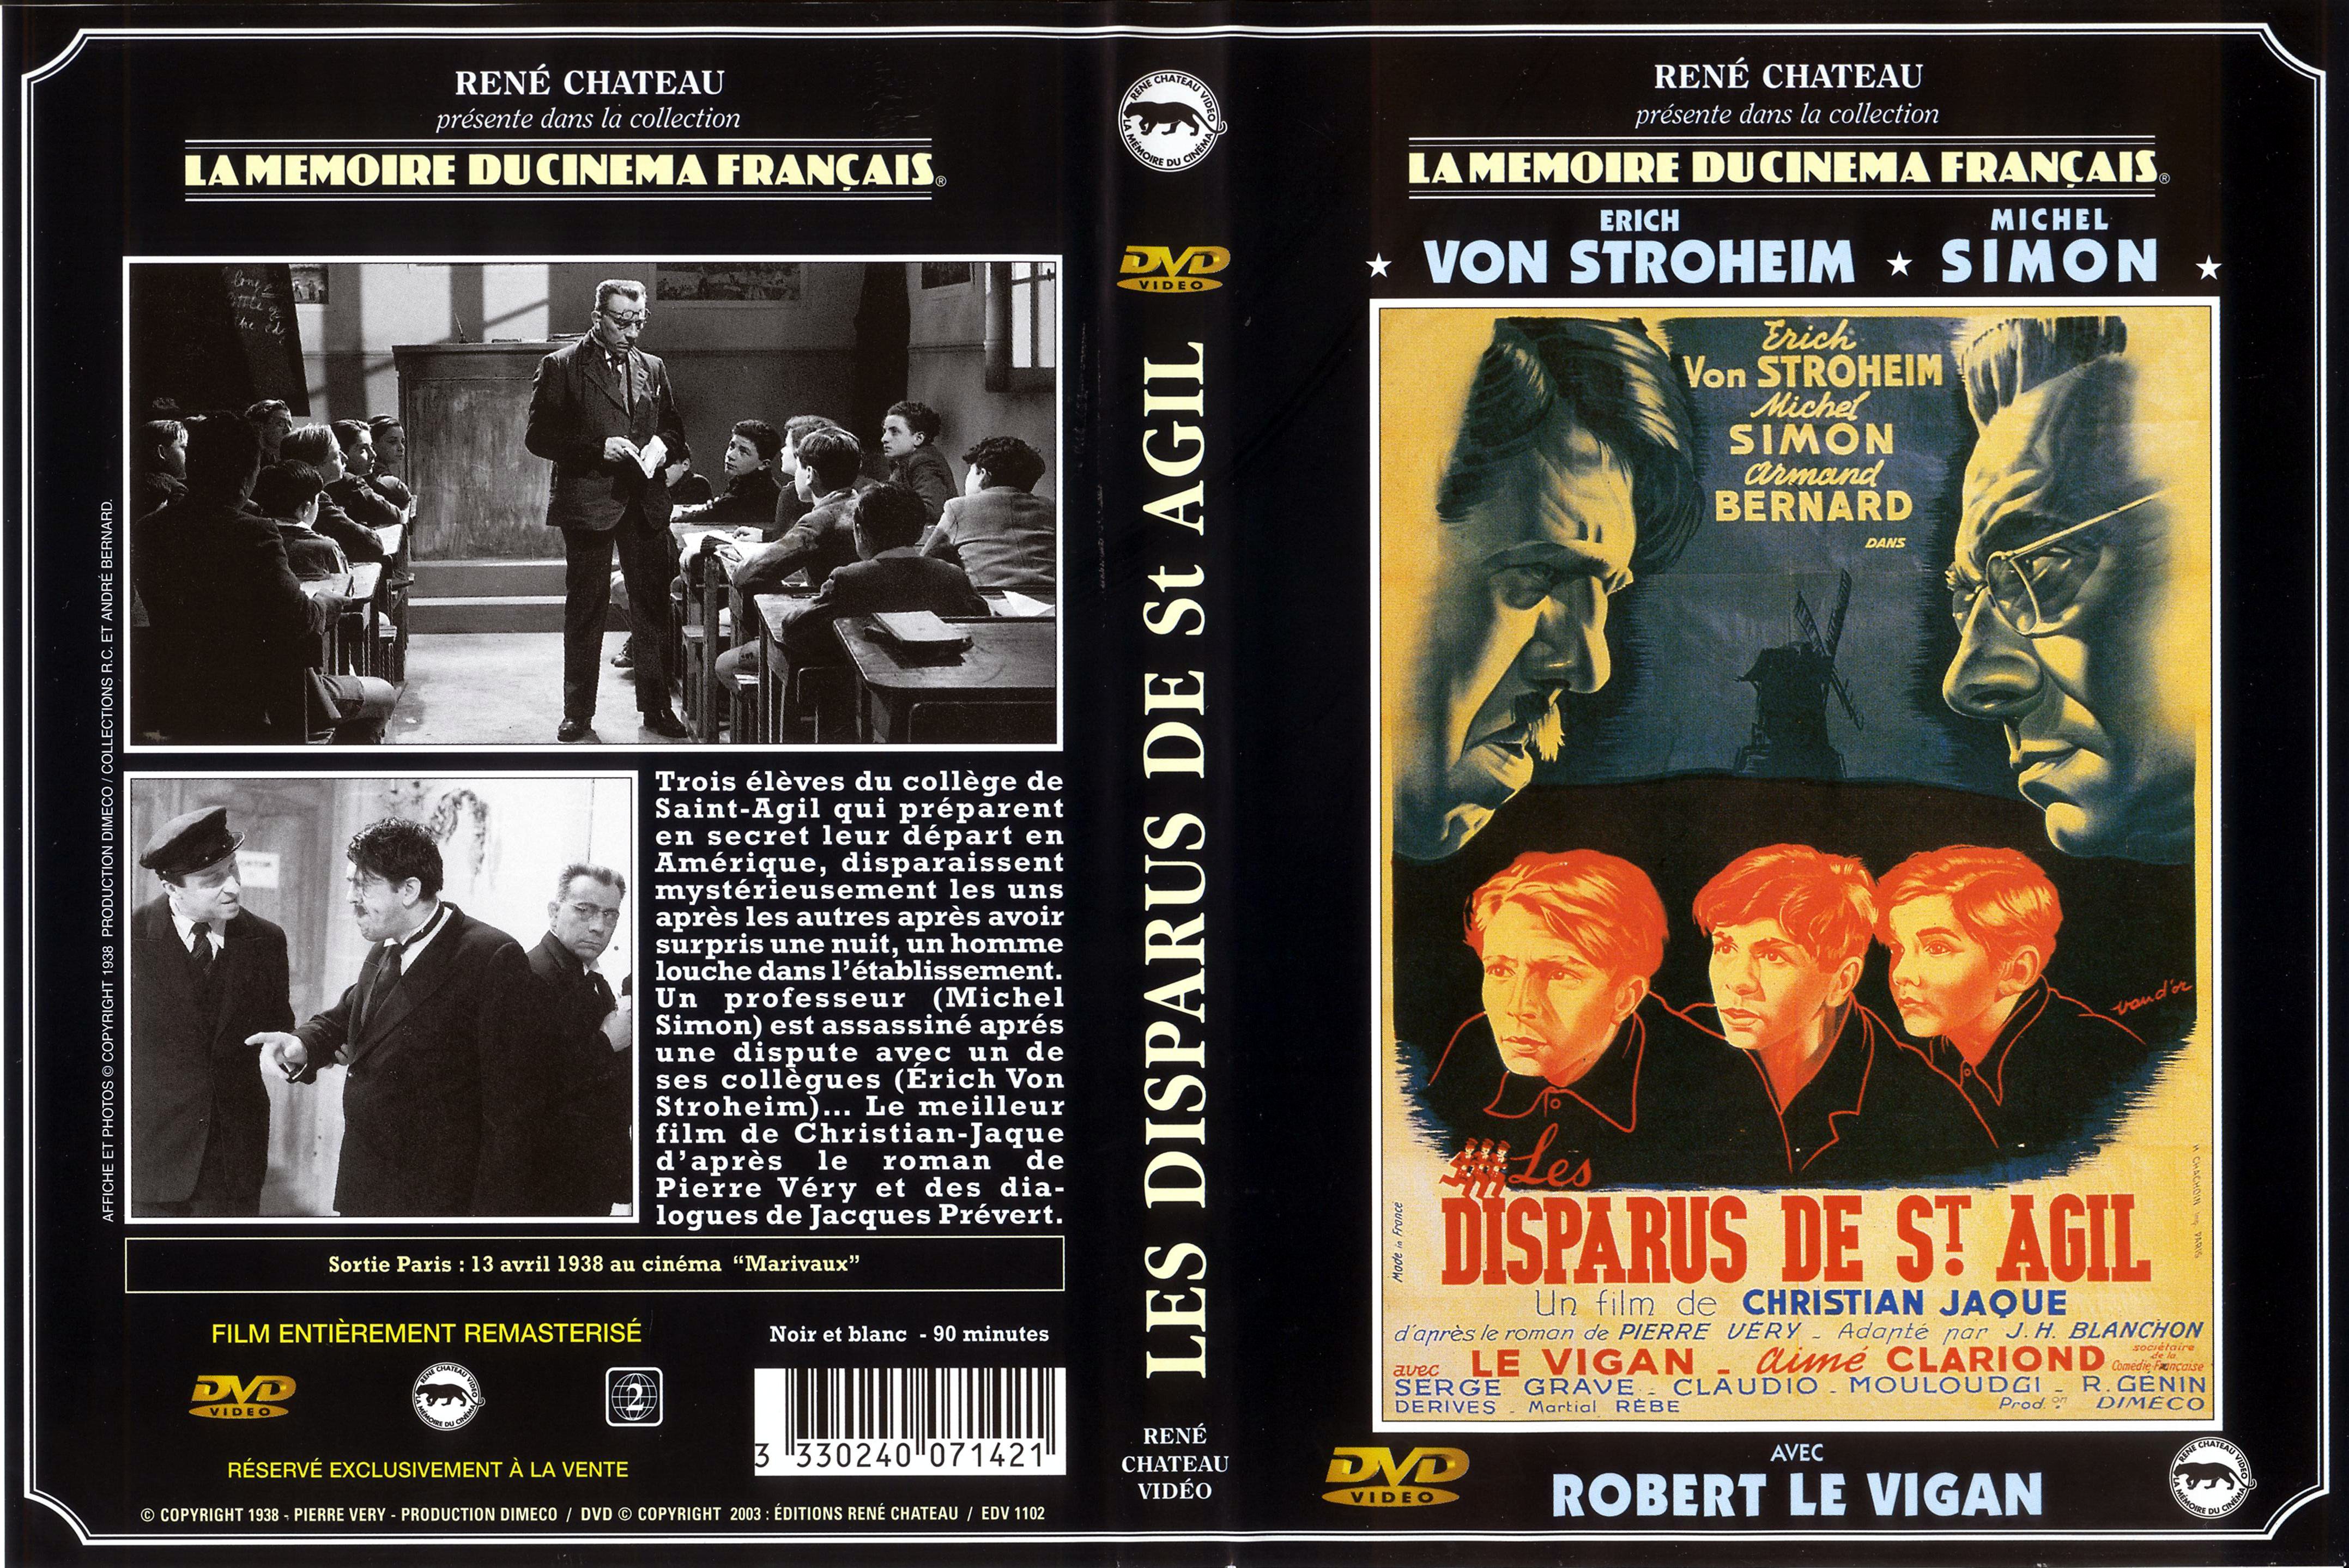 Jaquette DVD Les disparus de Saint-Agil (1938) v2